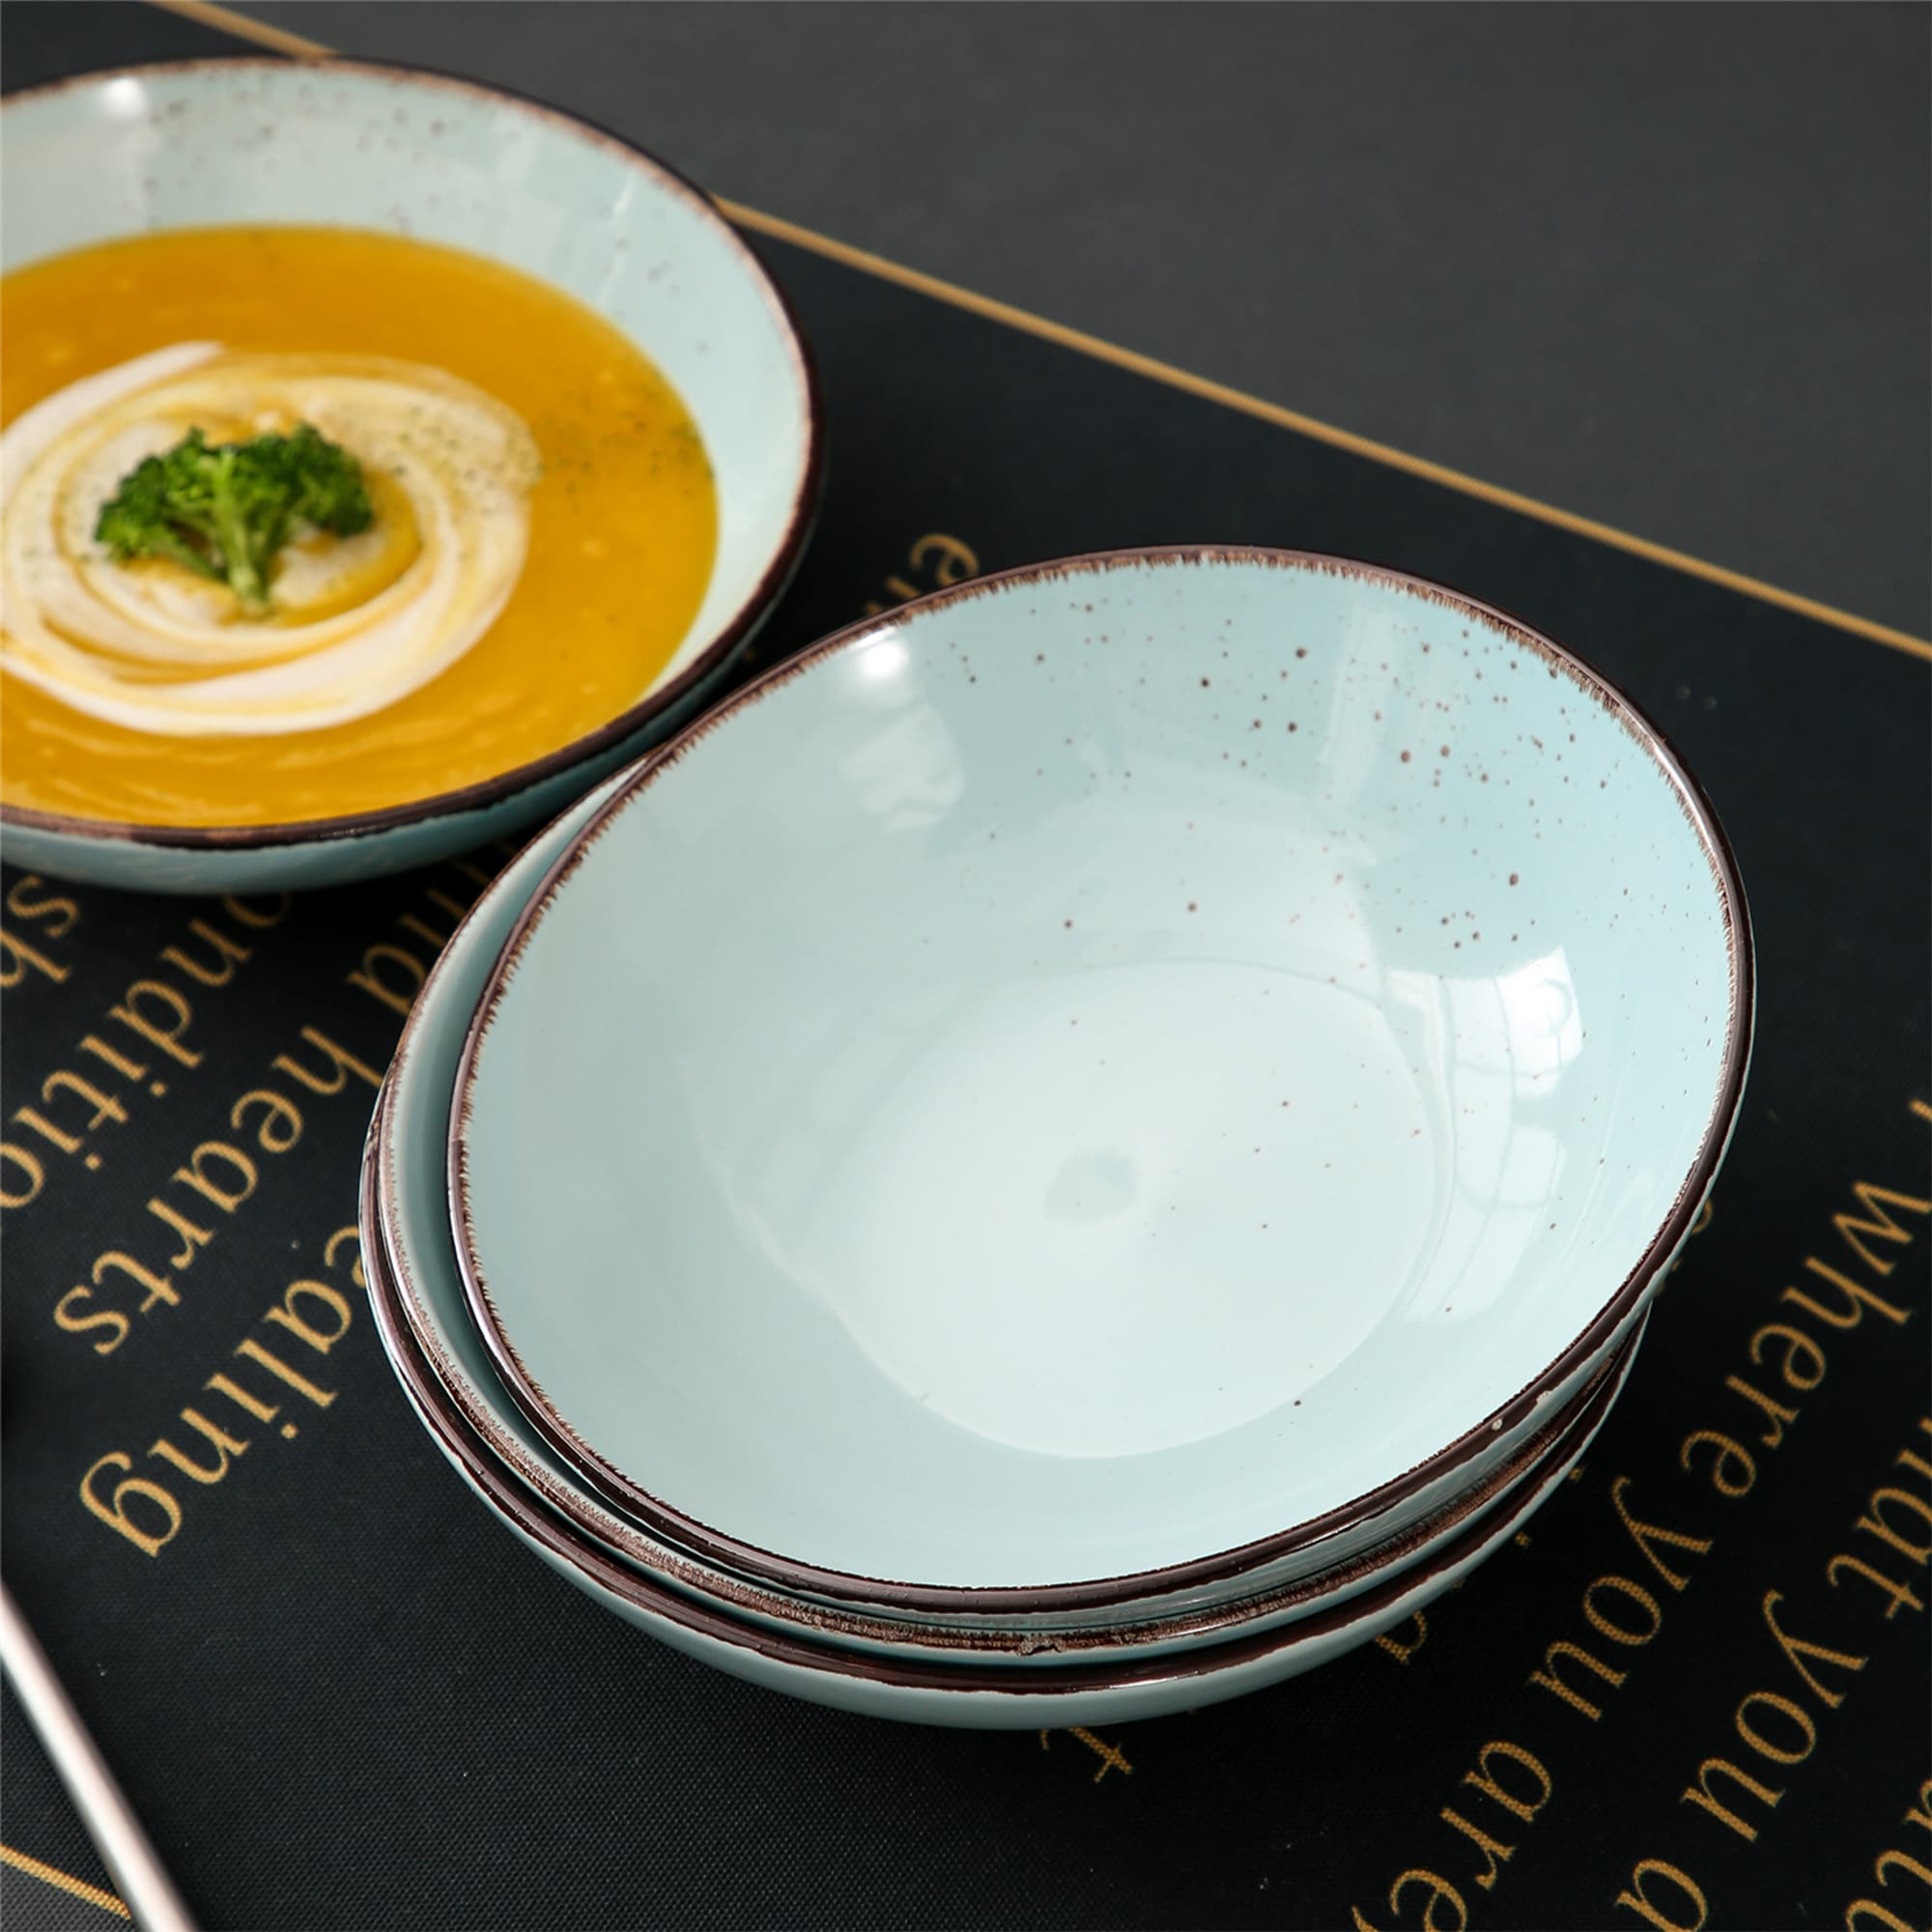 vancasso 4-Piece Aqua Blue Ceramic Dinnerware Set Soup Plates